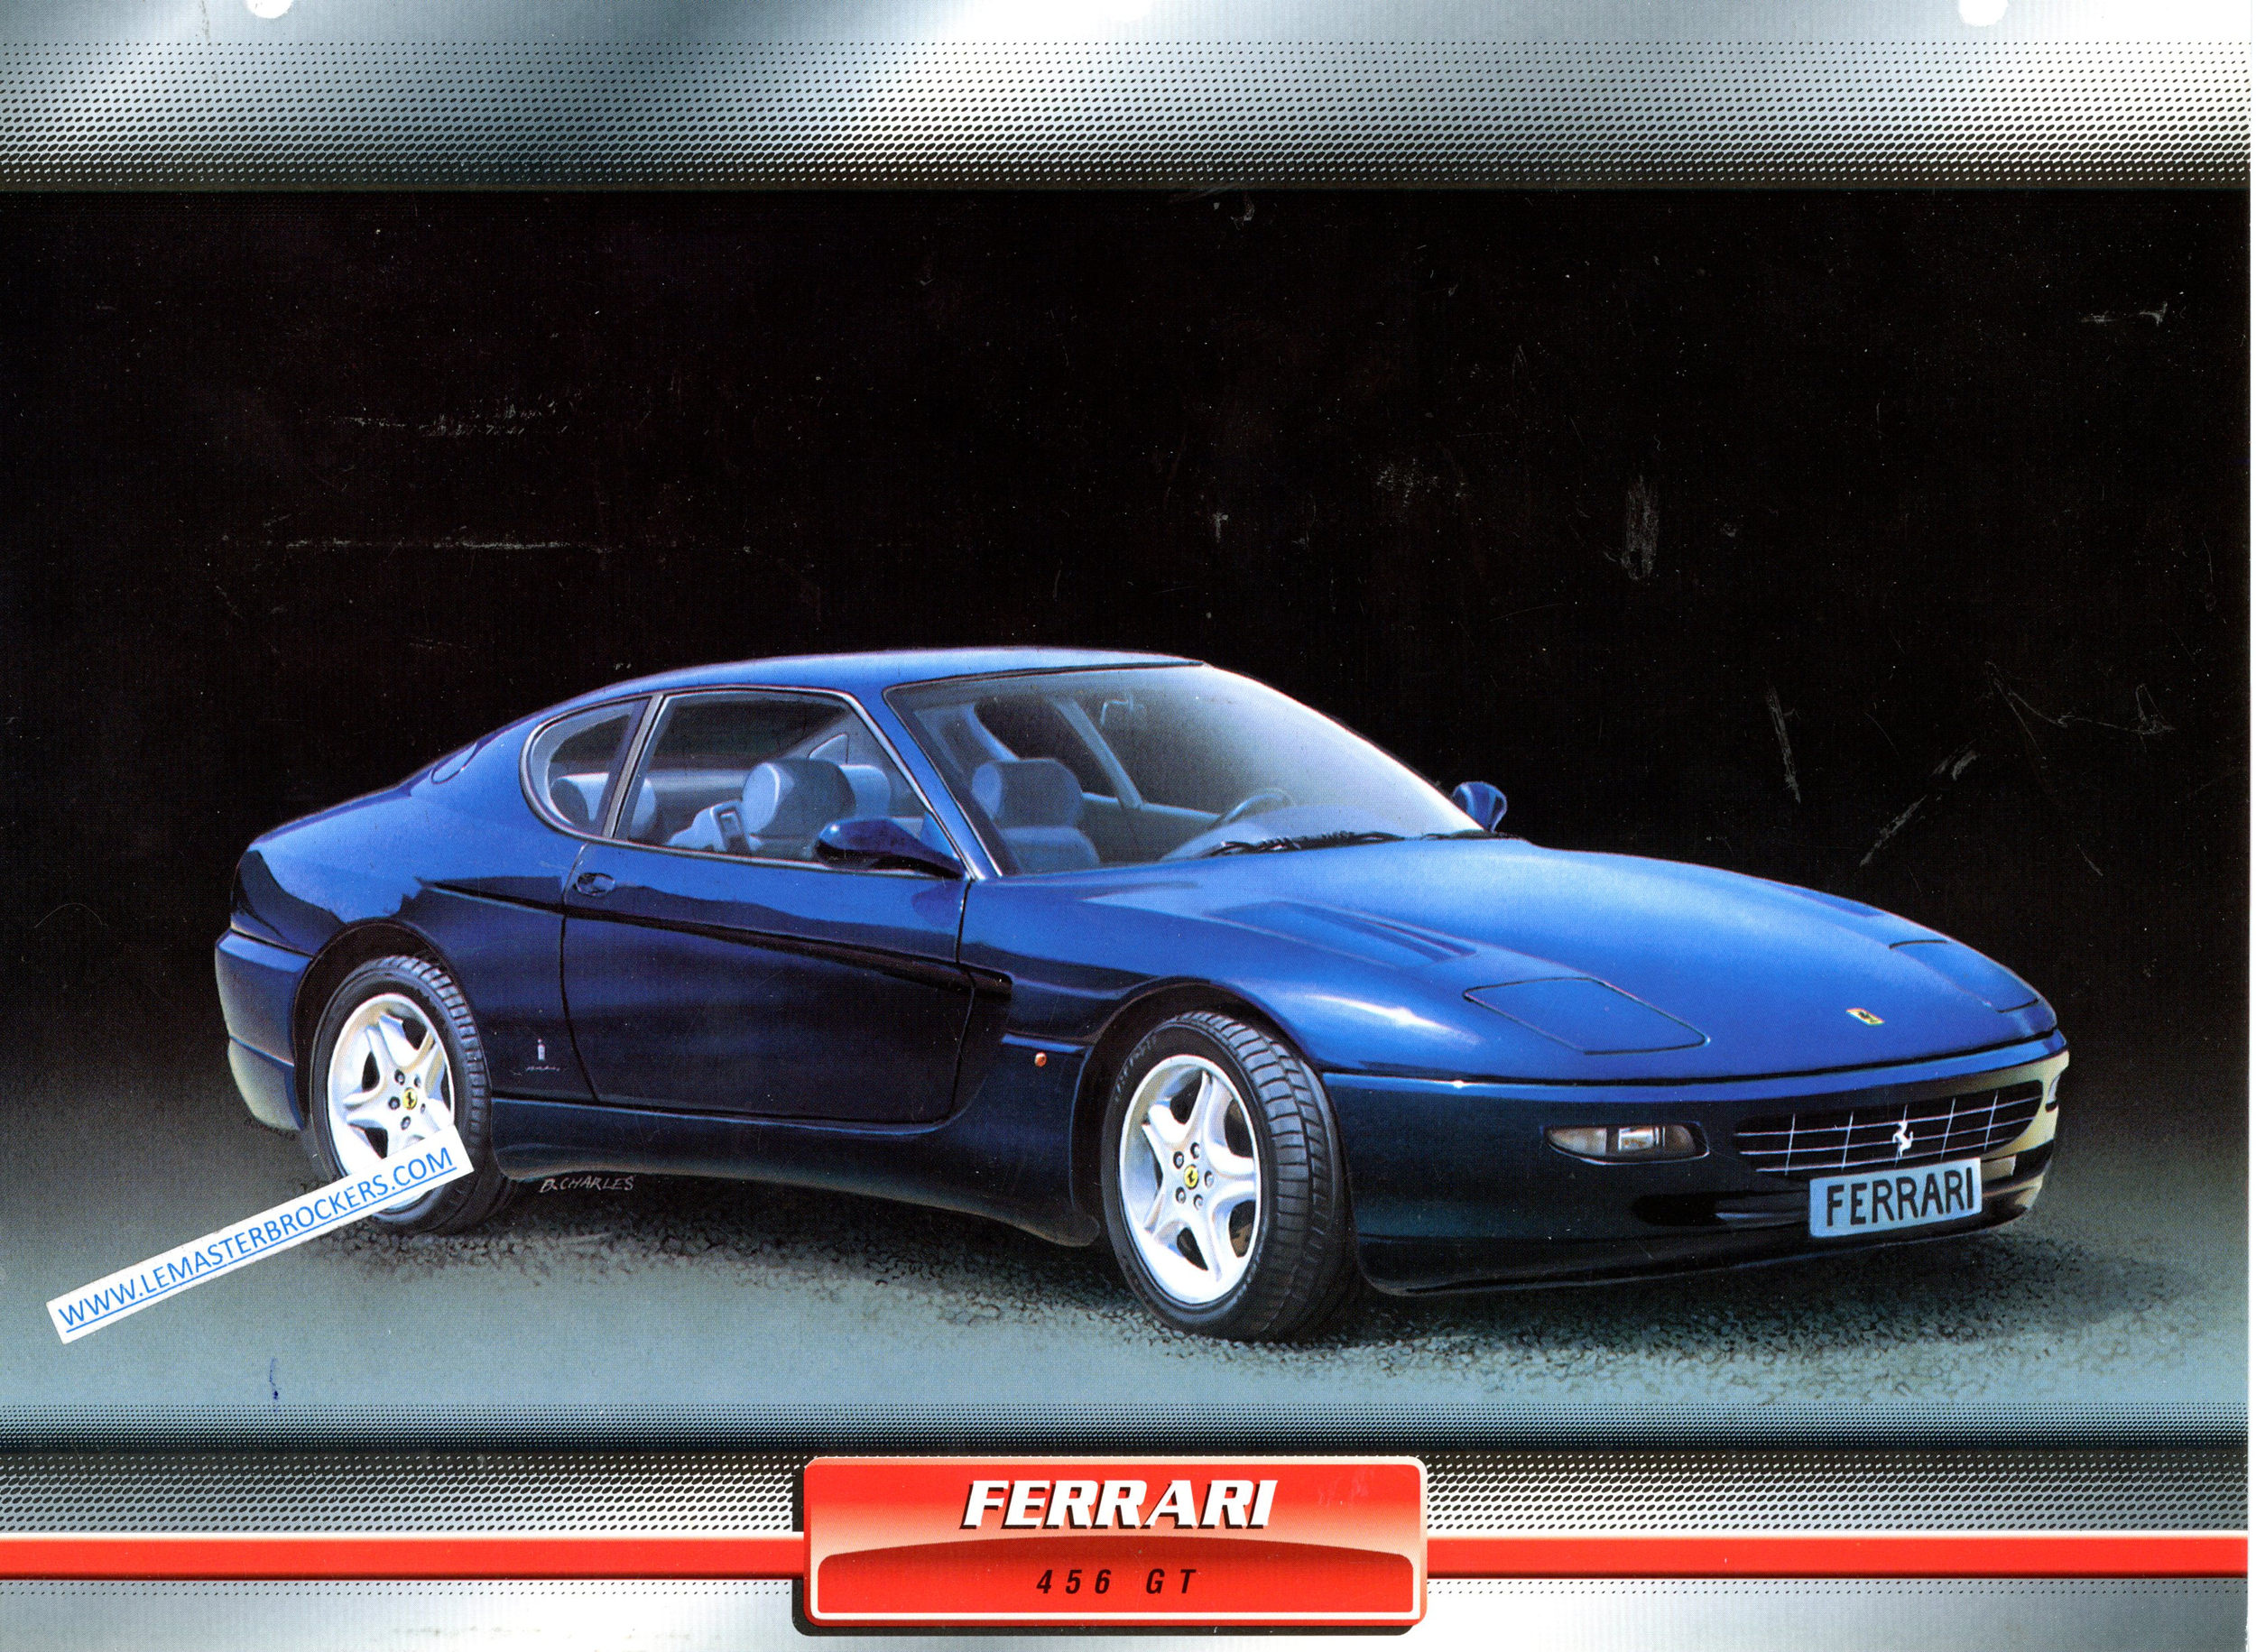 FERRARI 456 GT VOITURE DE SPORT 1994